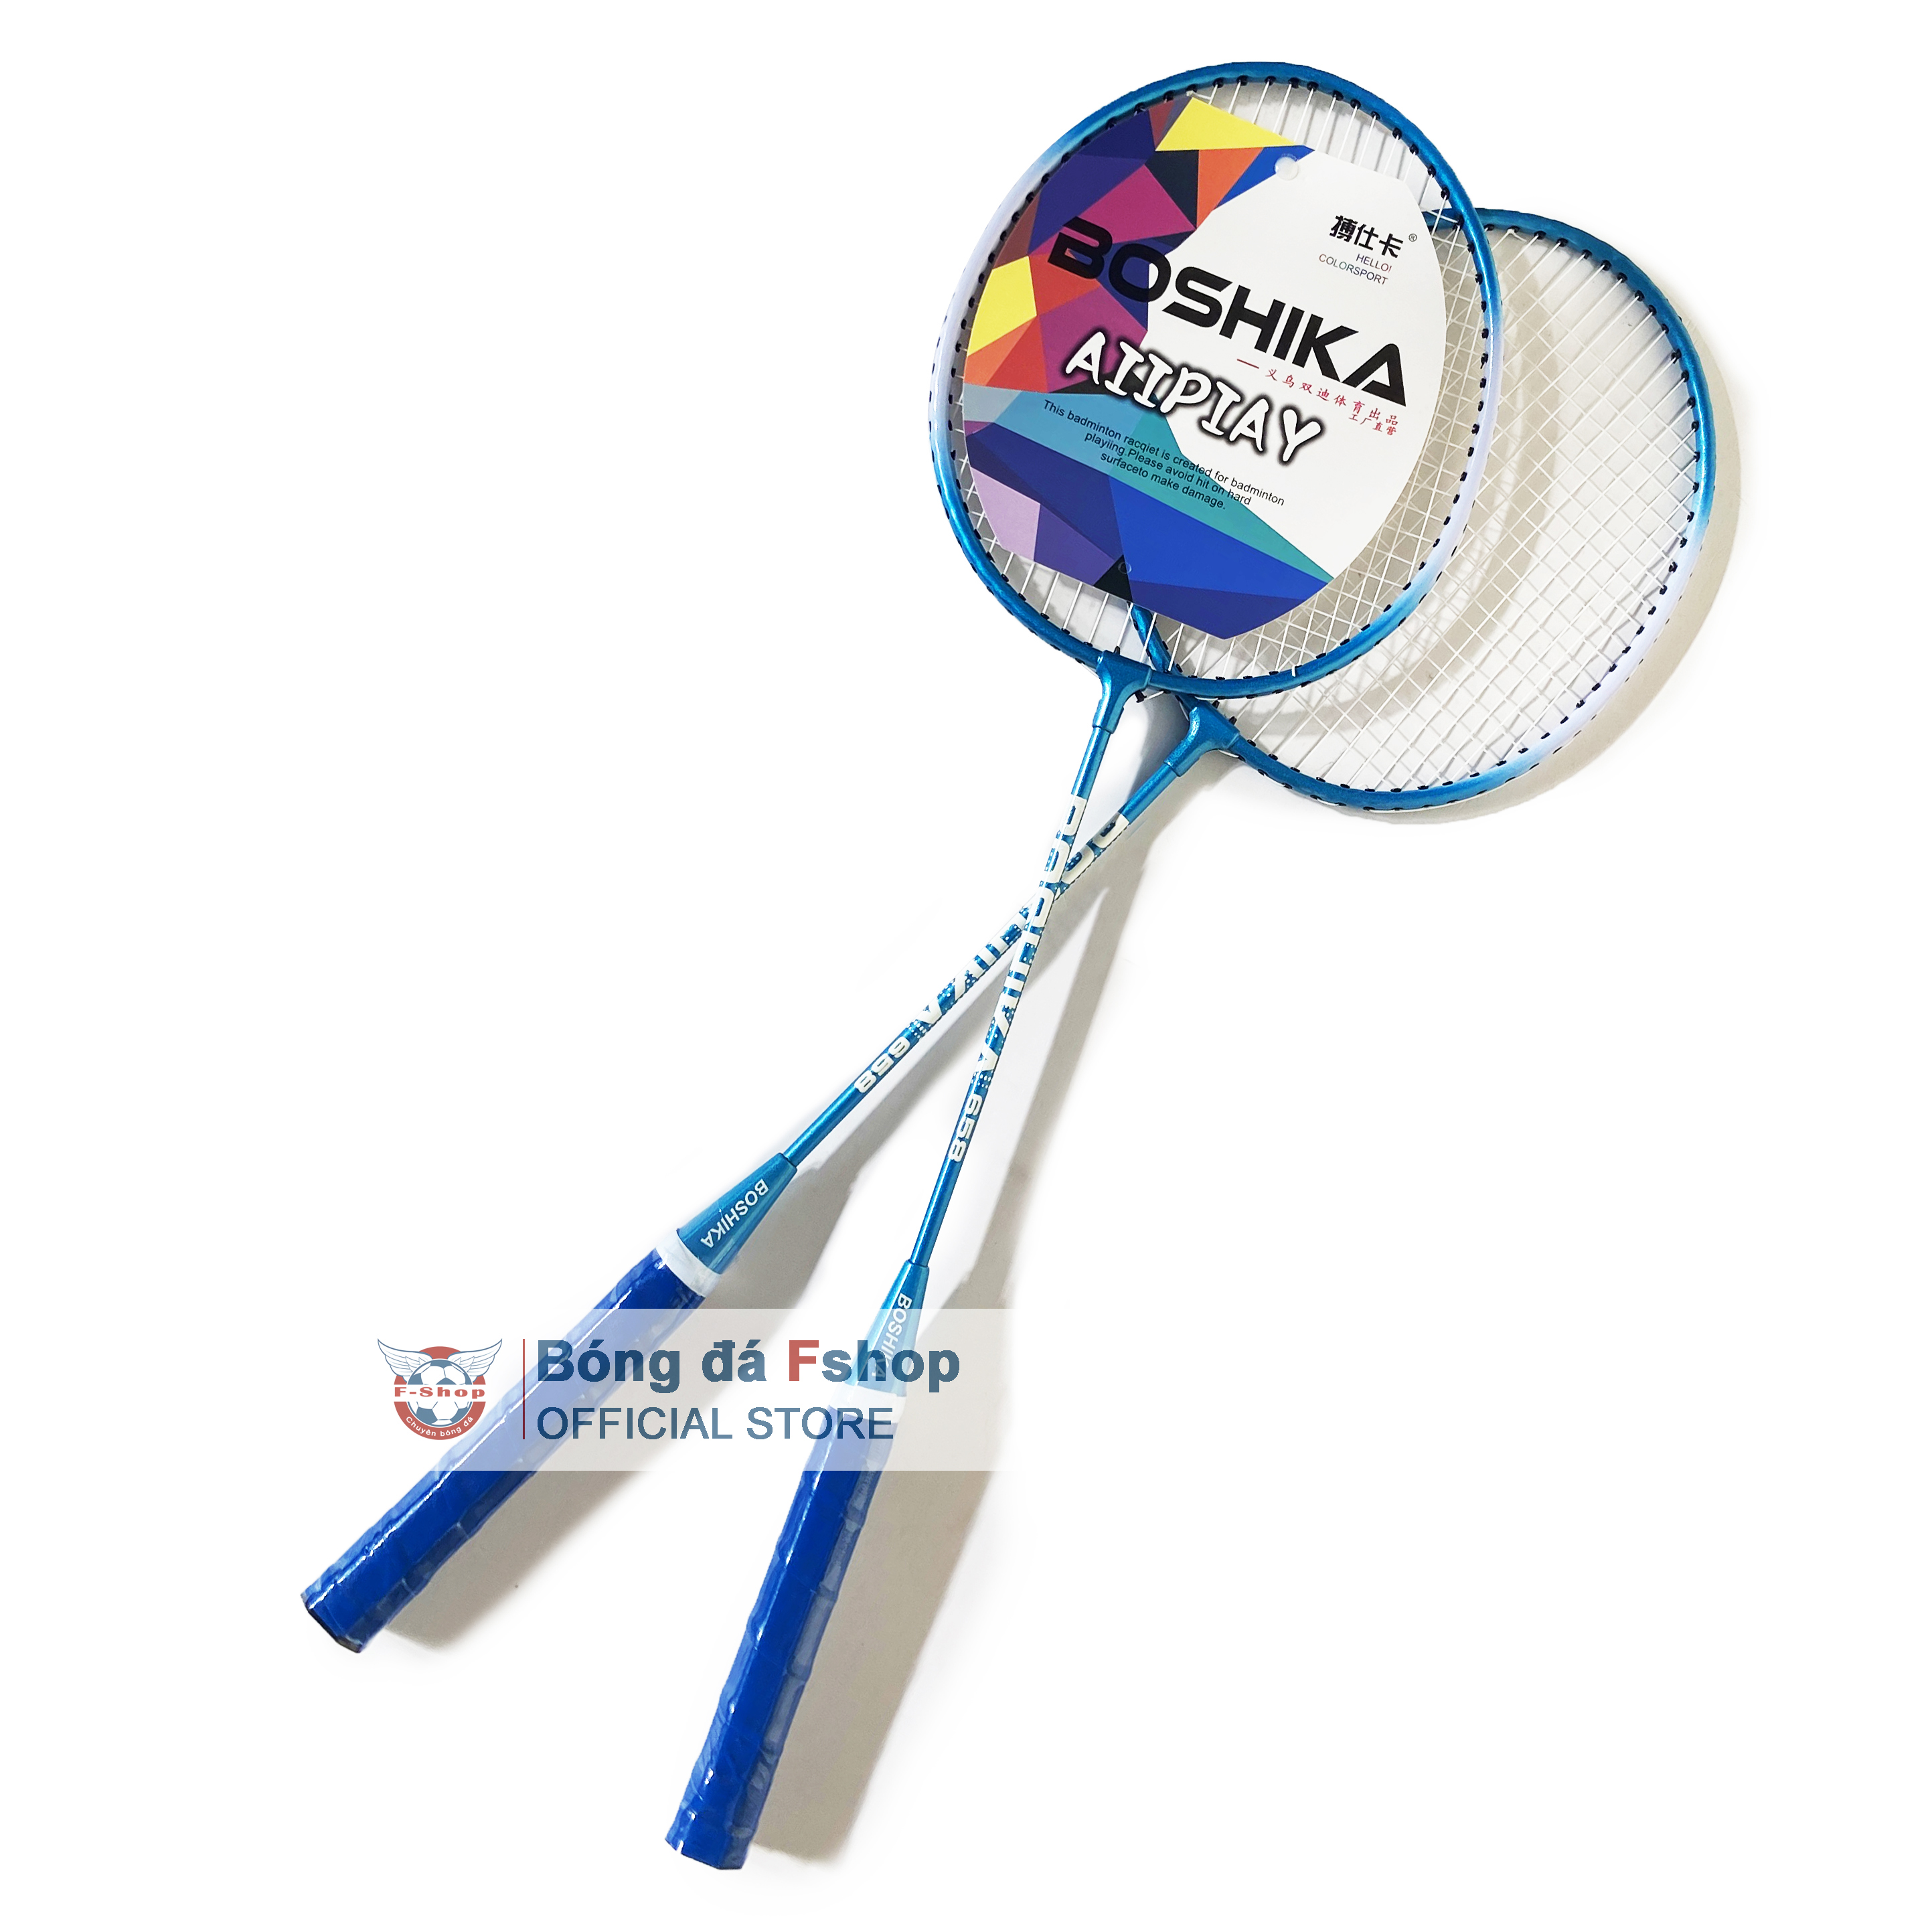 Vợt cầu lông Bos-hika - Đôi vợt cầu lông phổ thông - Tặng kèm cầu, căng sẵn lưới